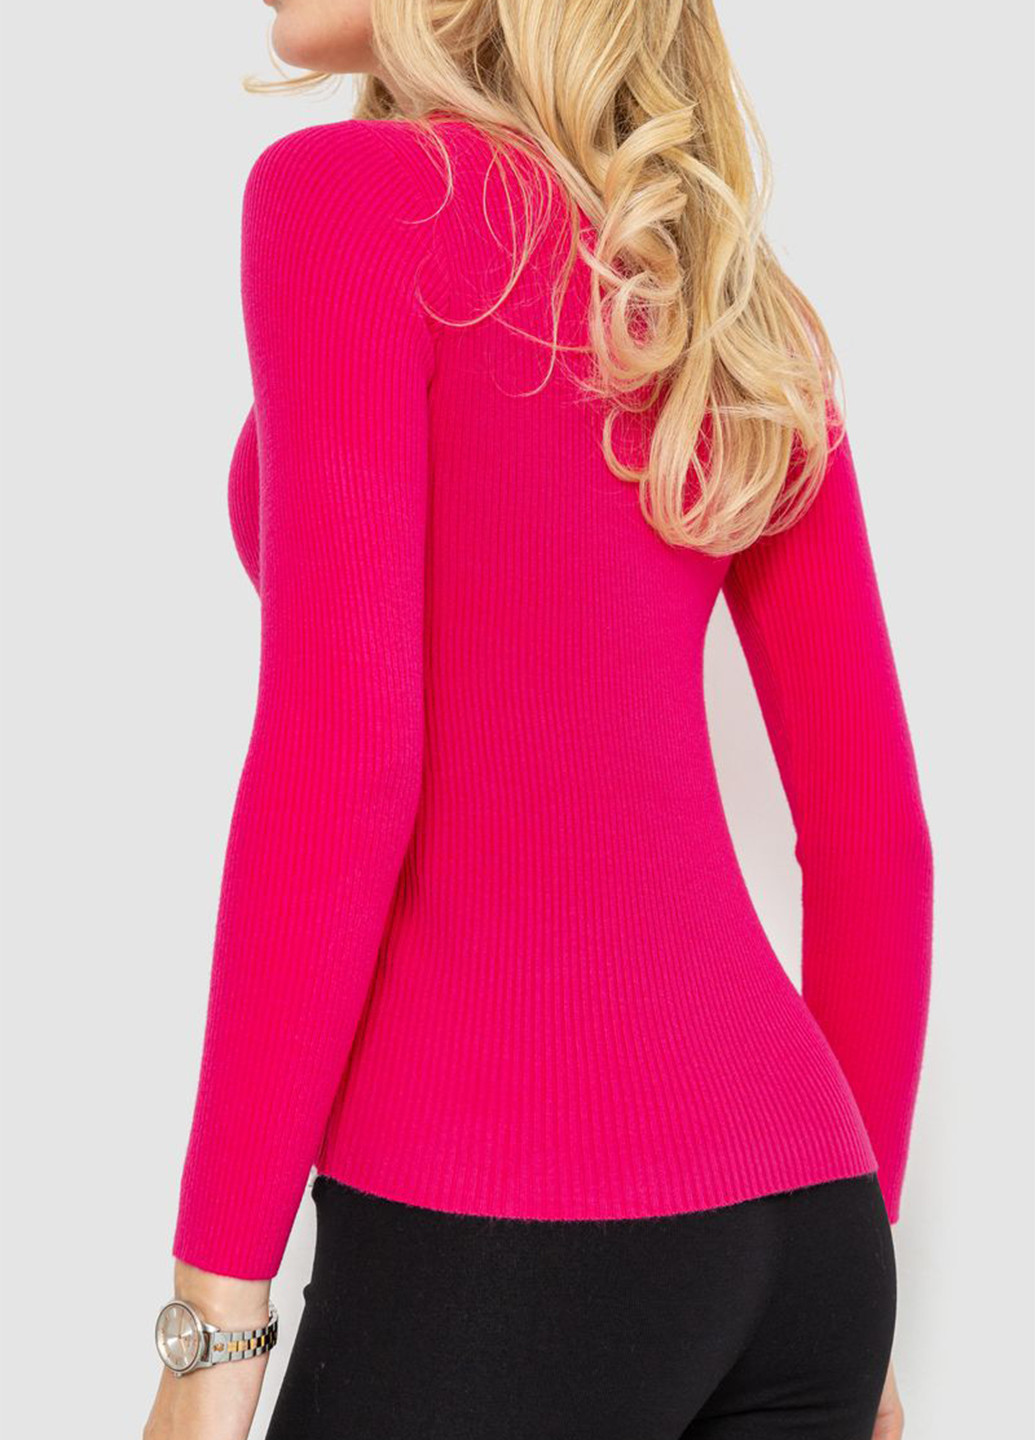 Малиновый демисезонный пуловер пуловер Ager